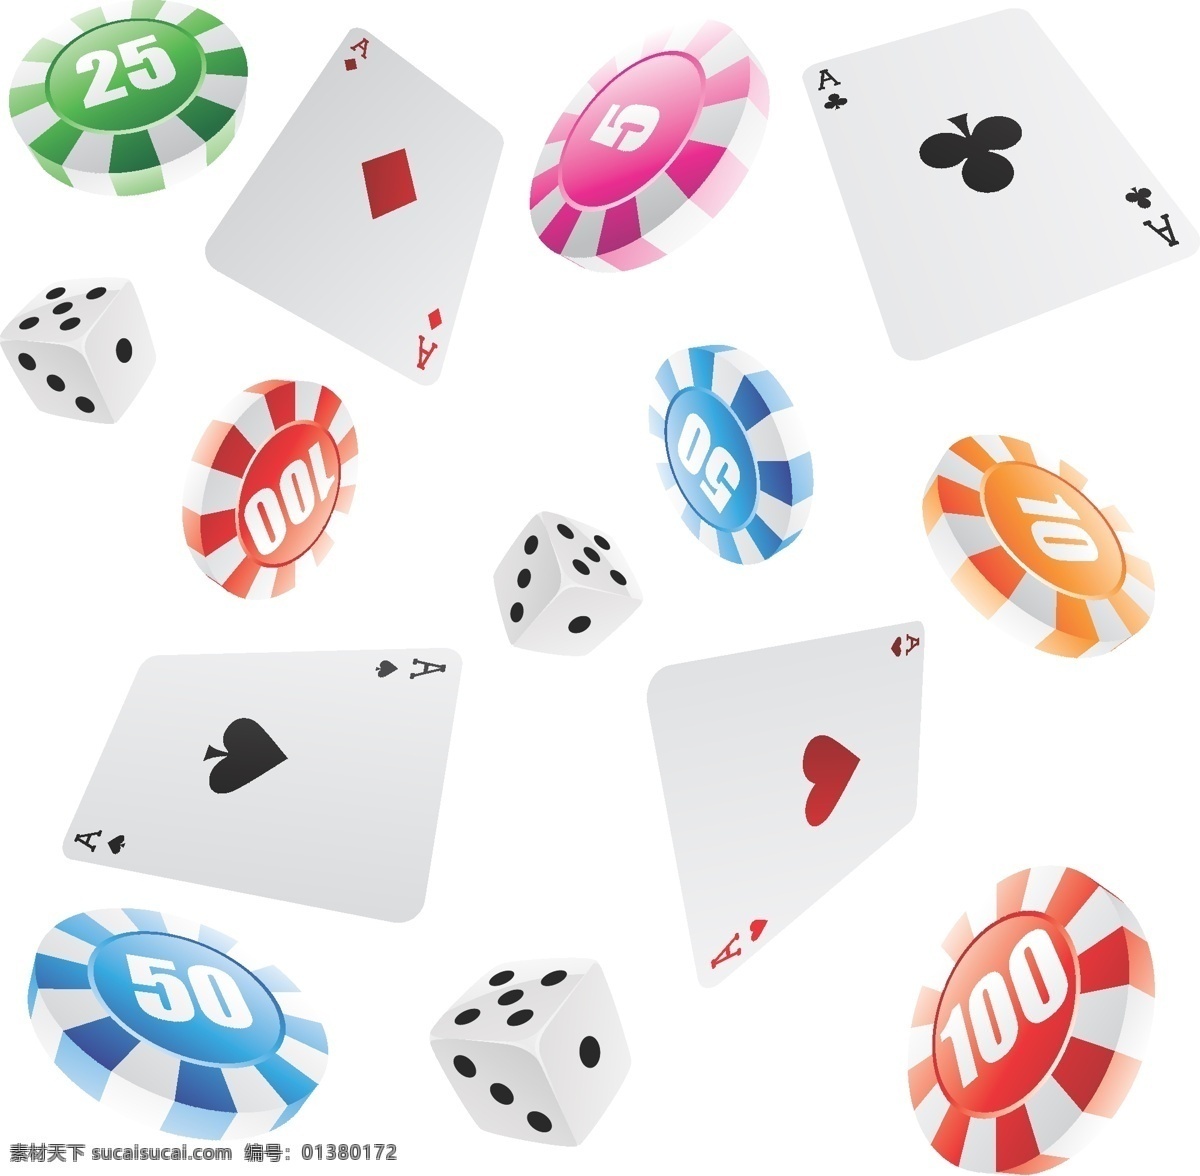 矢量图 筹码 卡牌 棋牌 游戏界面 移动界面设计 ui设计 游戏ui设计